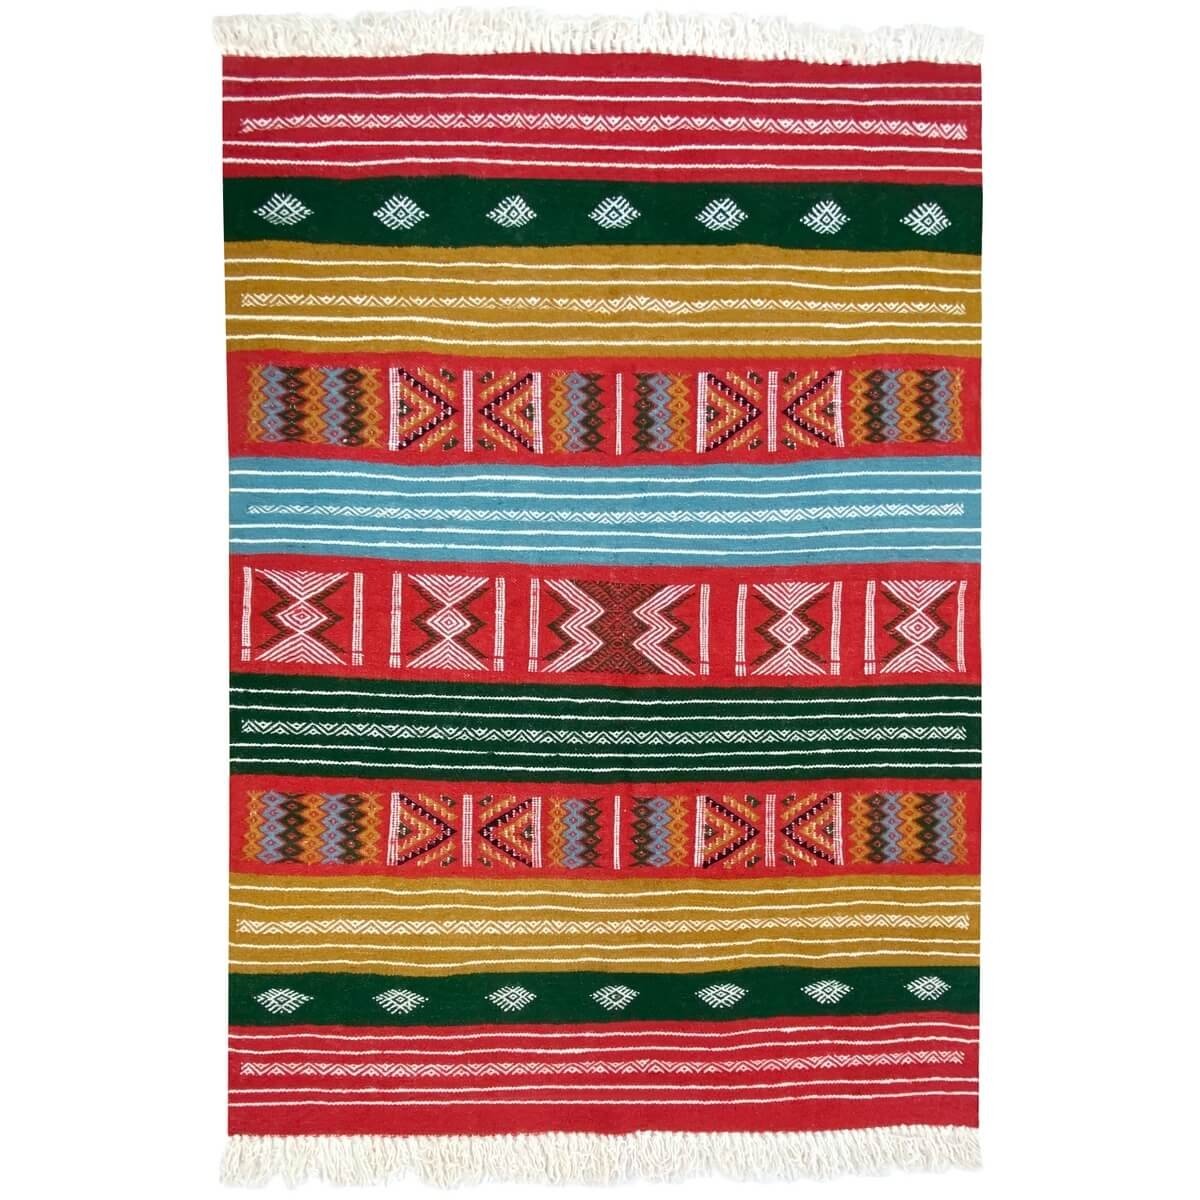 tappeto berbero Tappeto Kilim Dalina 100x150 Multicolore (Fatto a mano, Lana) Tappeto kilim tunisino, in stile marocchino. Tappe